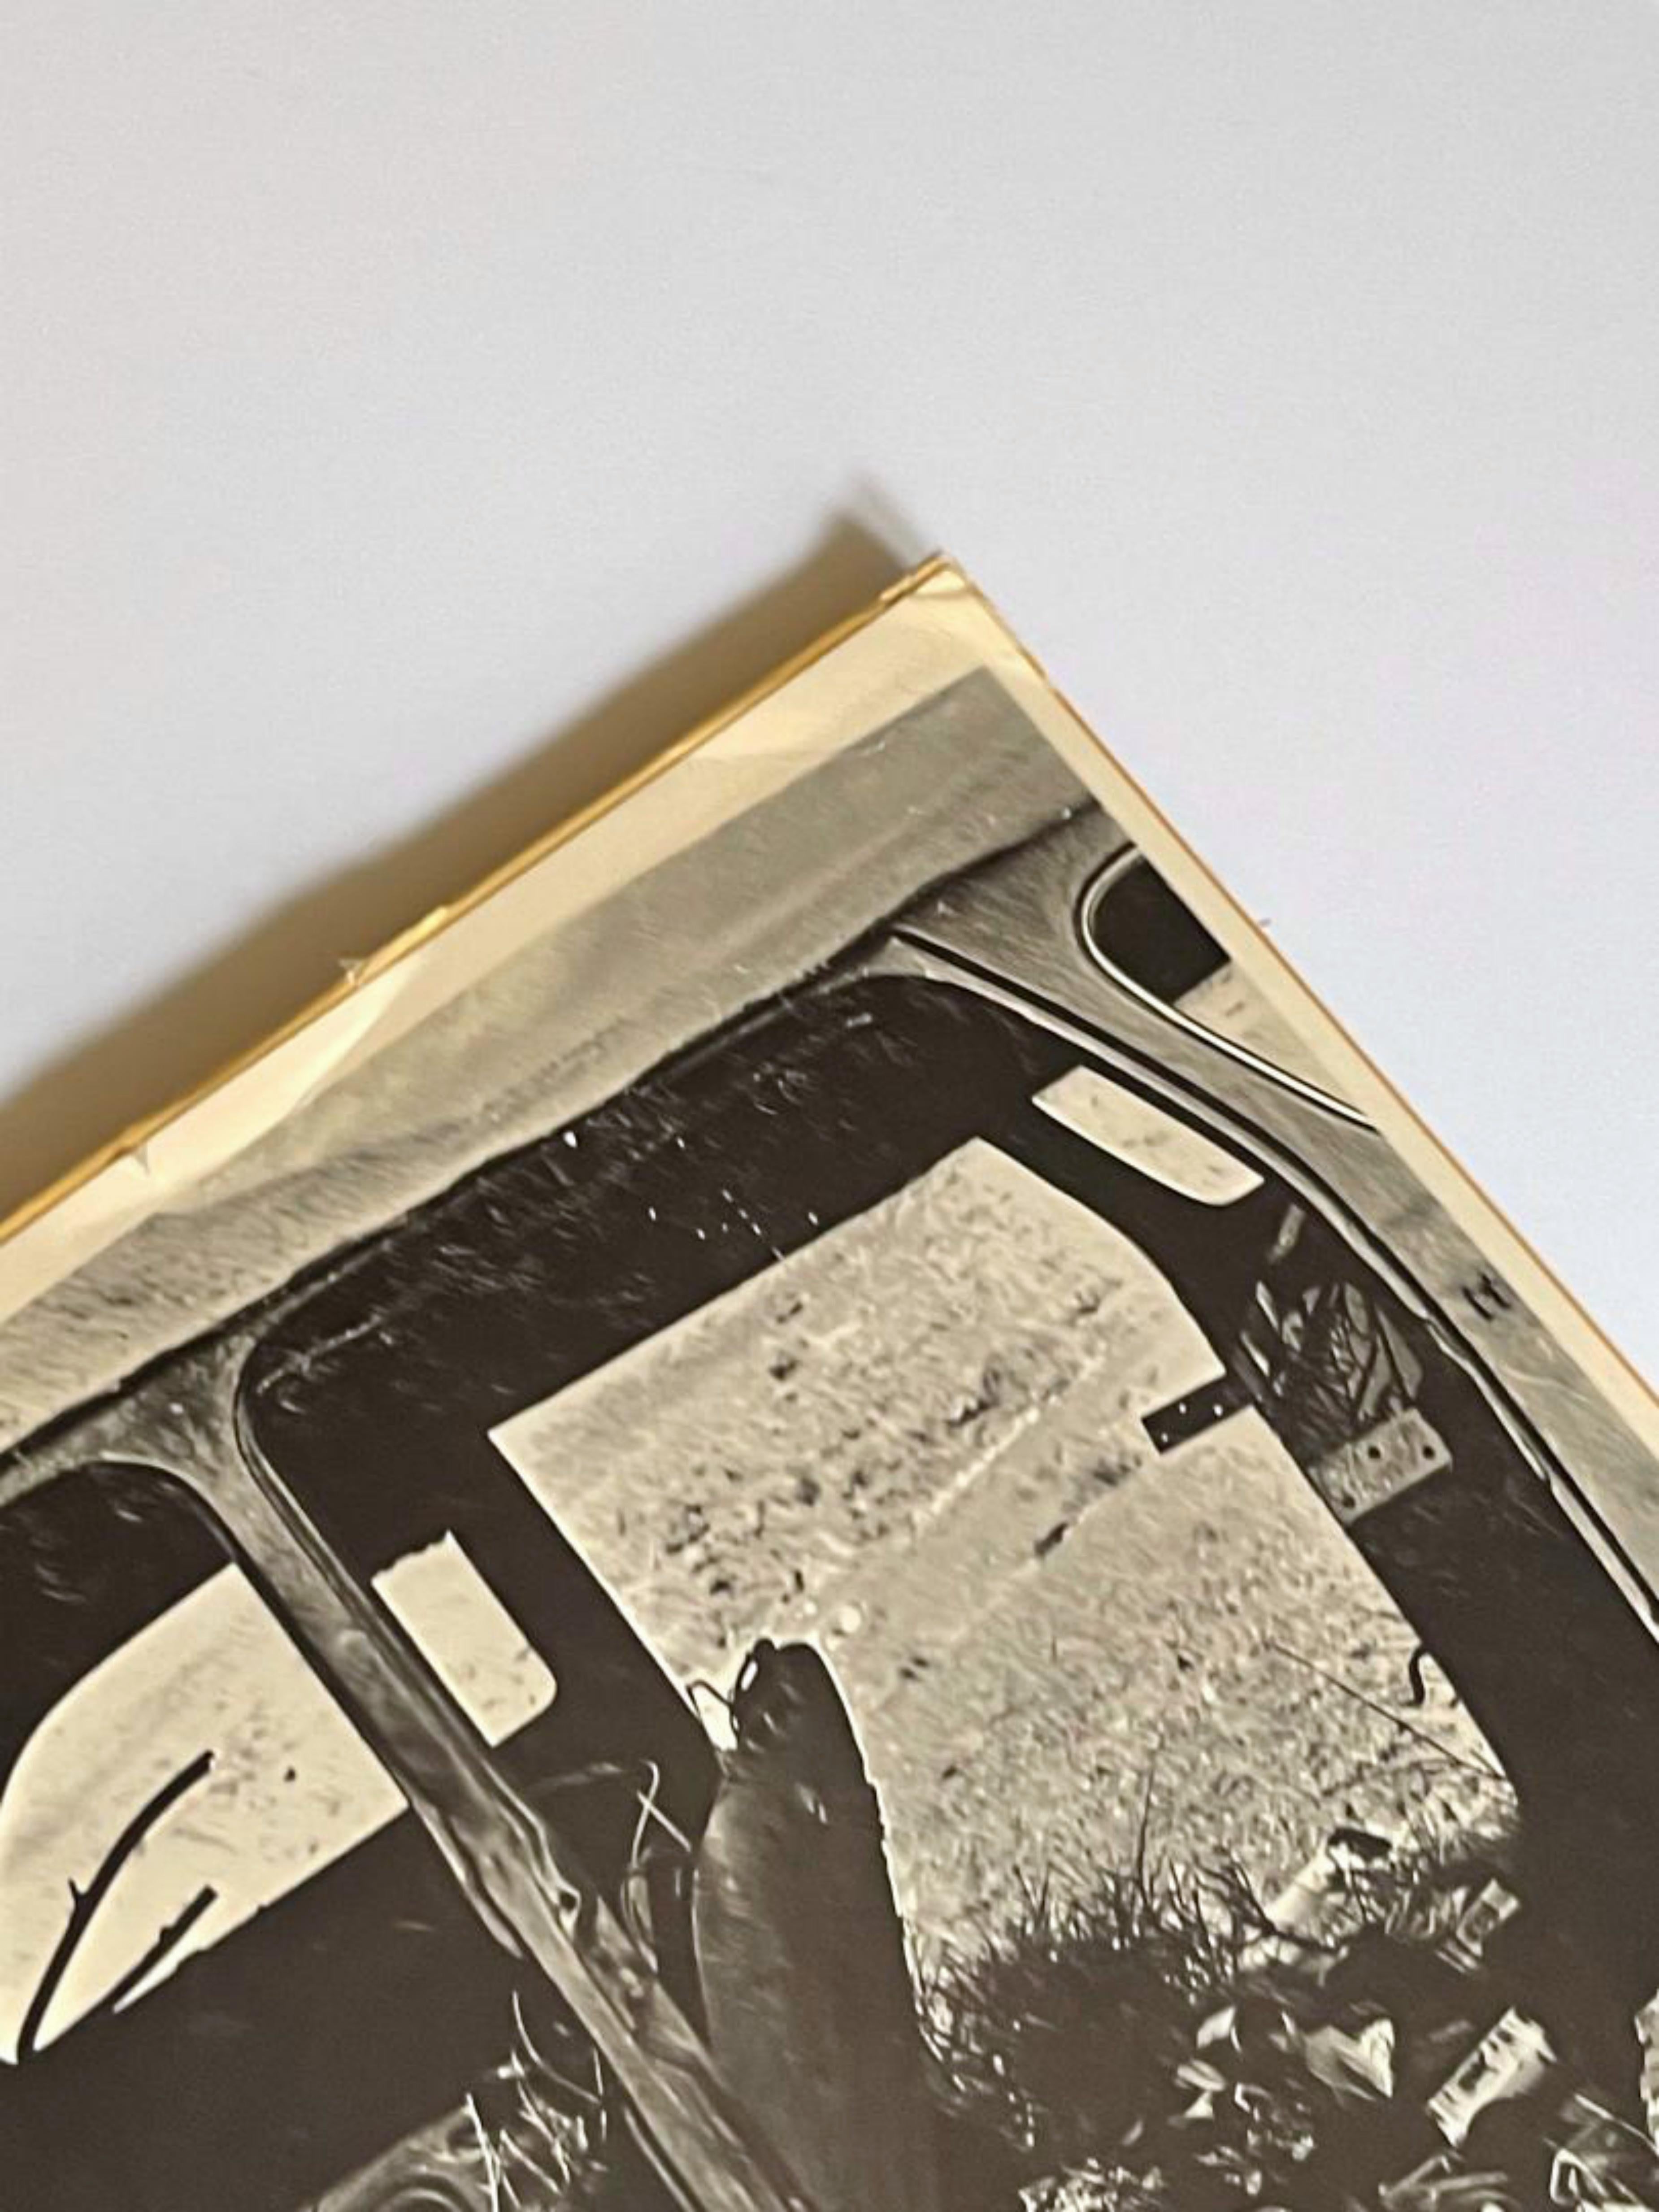 Robert Rauschenberg
Journée de la Terre, 1970
Lithographie offset
Plaque signée et datée au recto
Éditeur : Castelli Graphics
33 1/2 × 22 1/4 pouces
Non encadré
Il s'agit de l'affiche lithographique offset originale de 1970. Vous trouverez